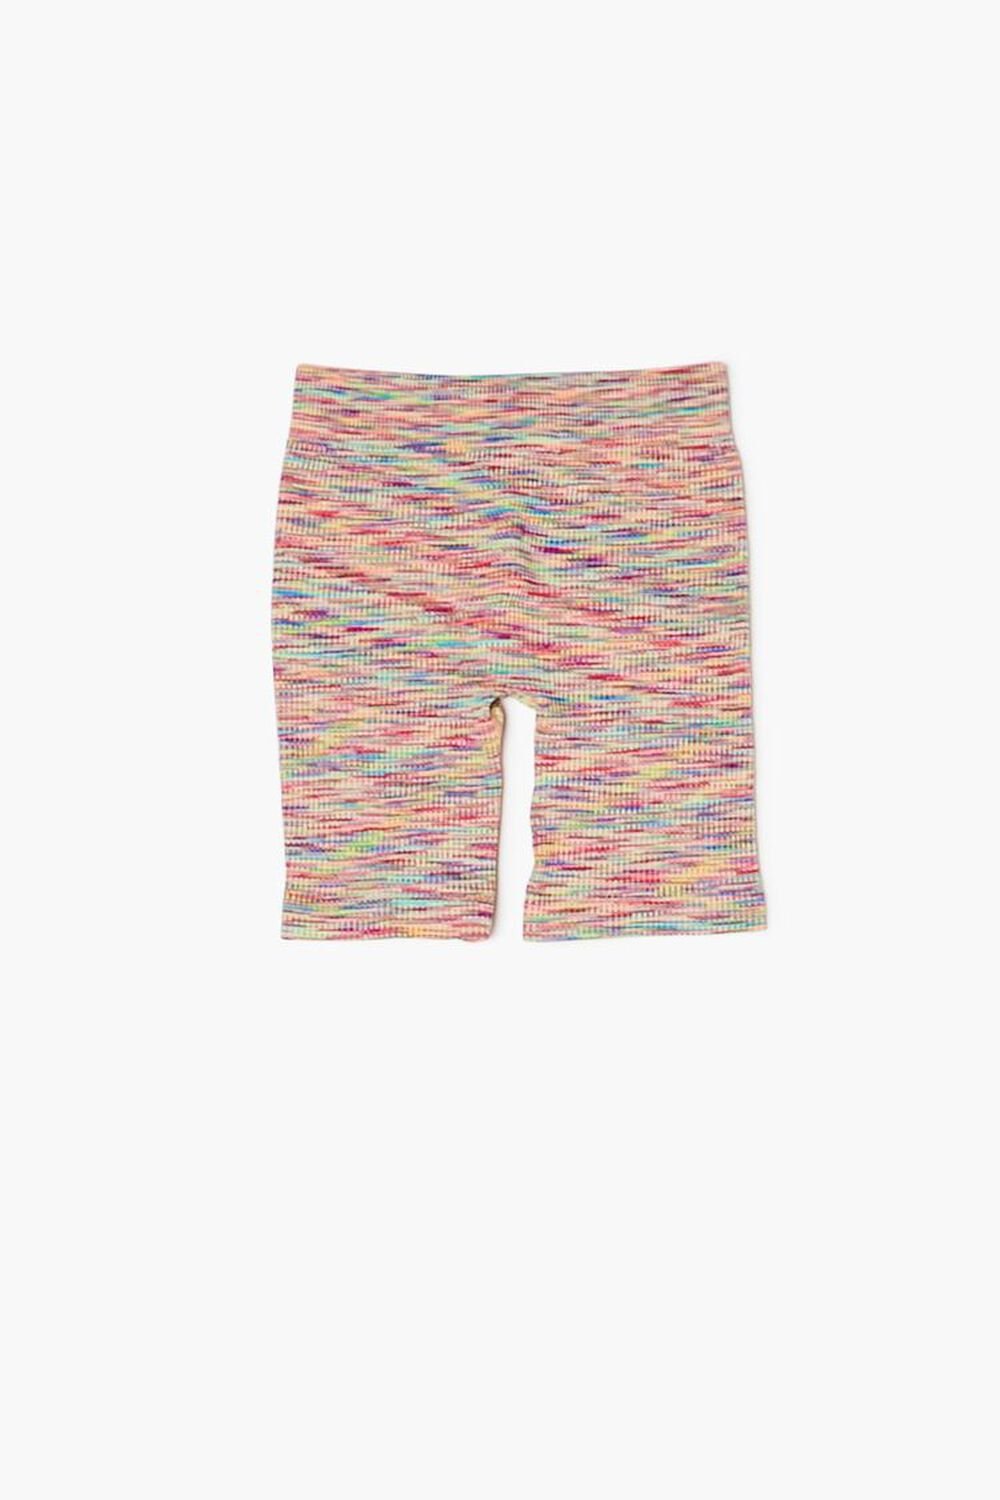 YELLOW/MULTI Girls Marled Knit Seamless Biker Shorts (Kids), image 2